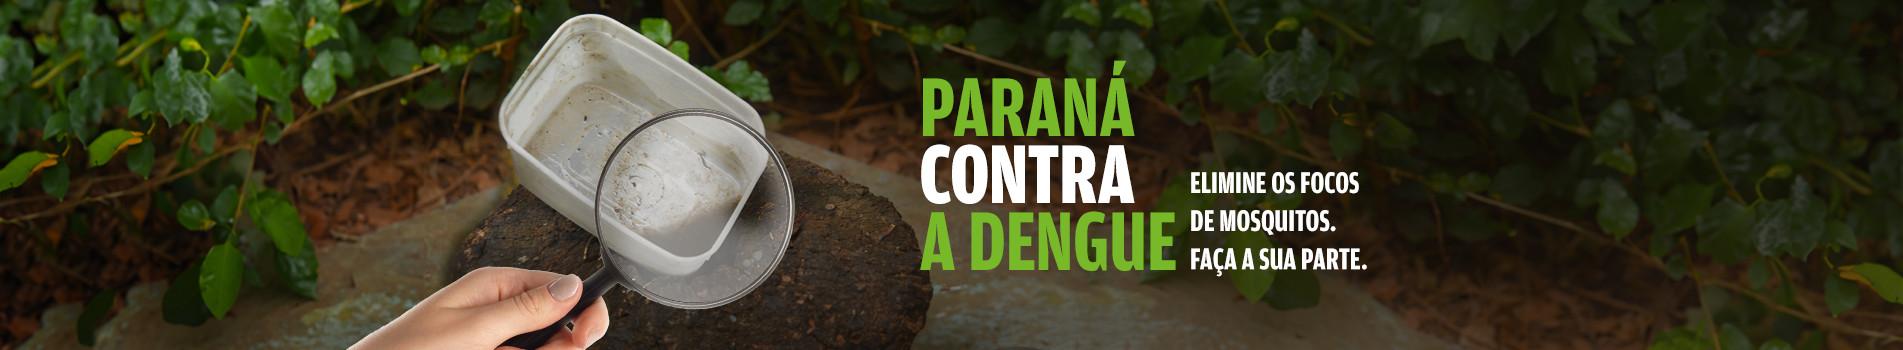 Campanha Dengue 